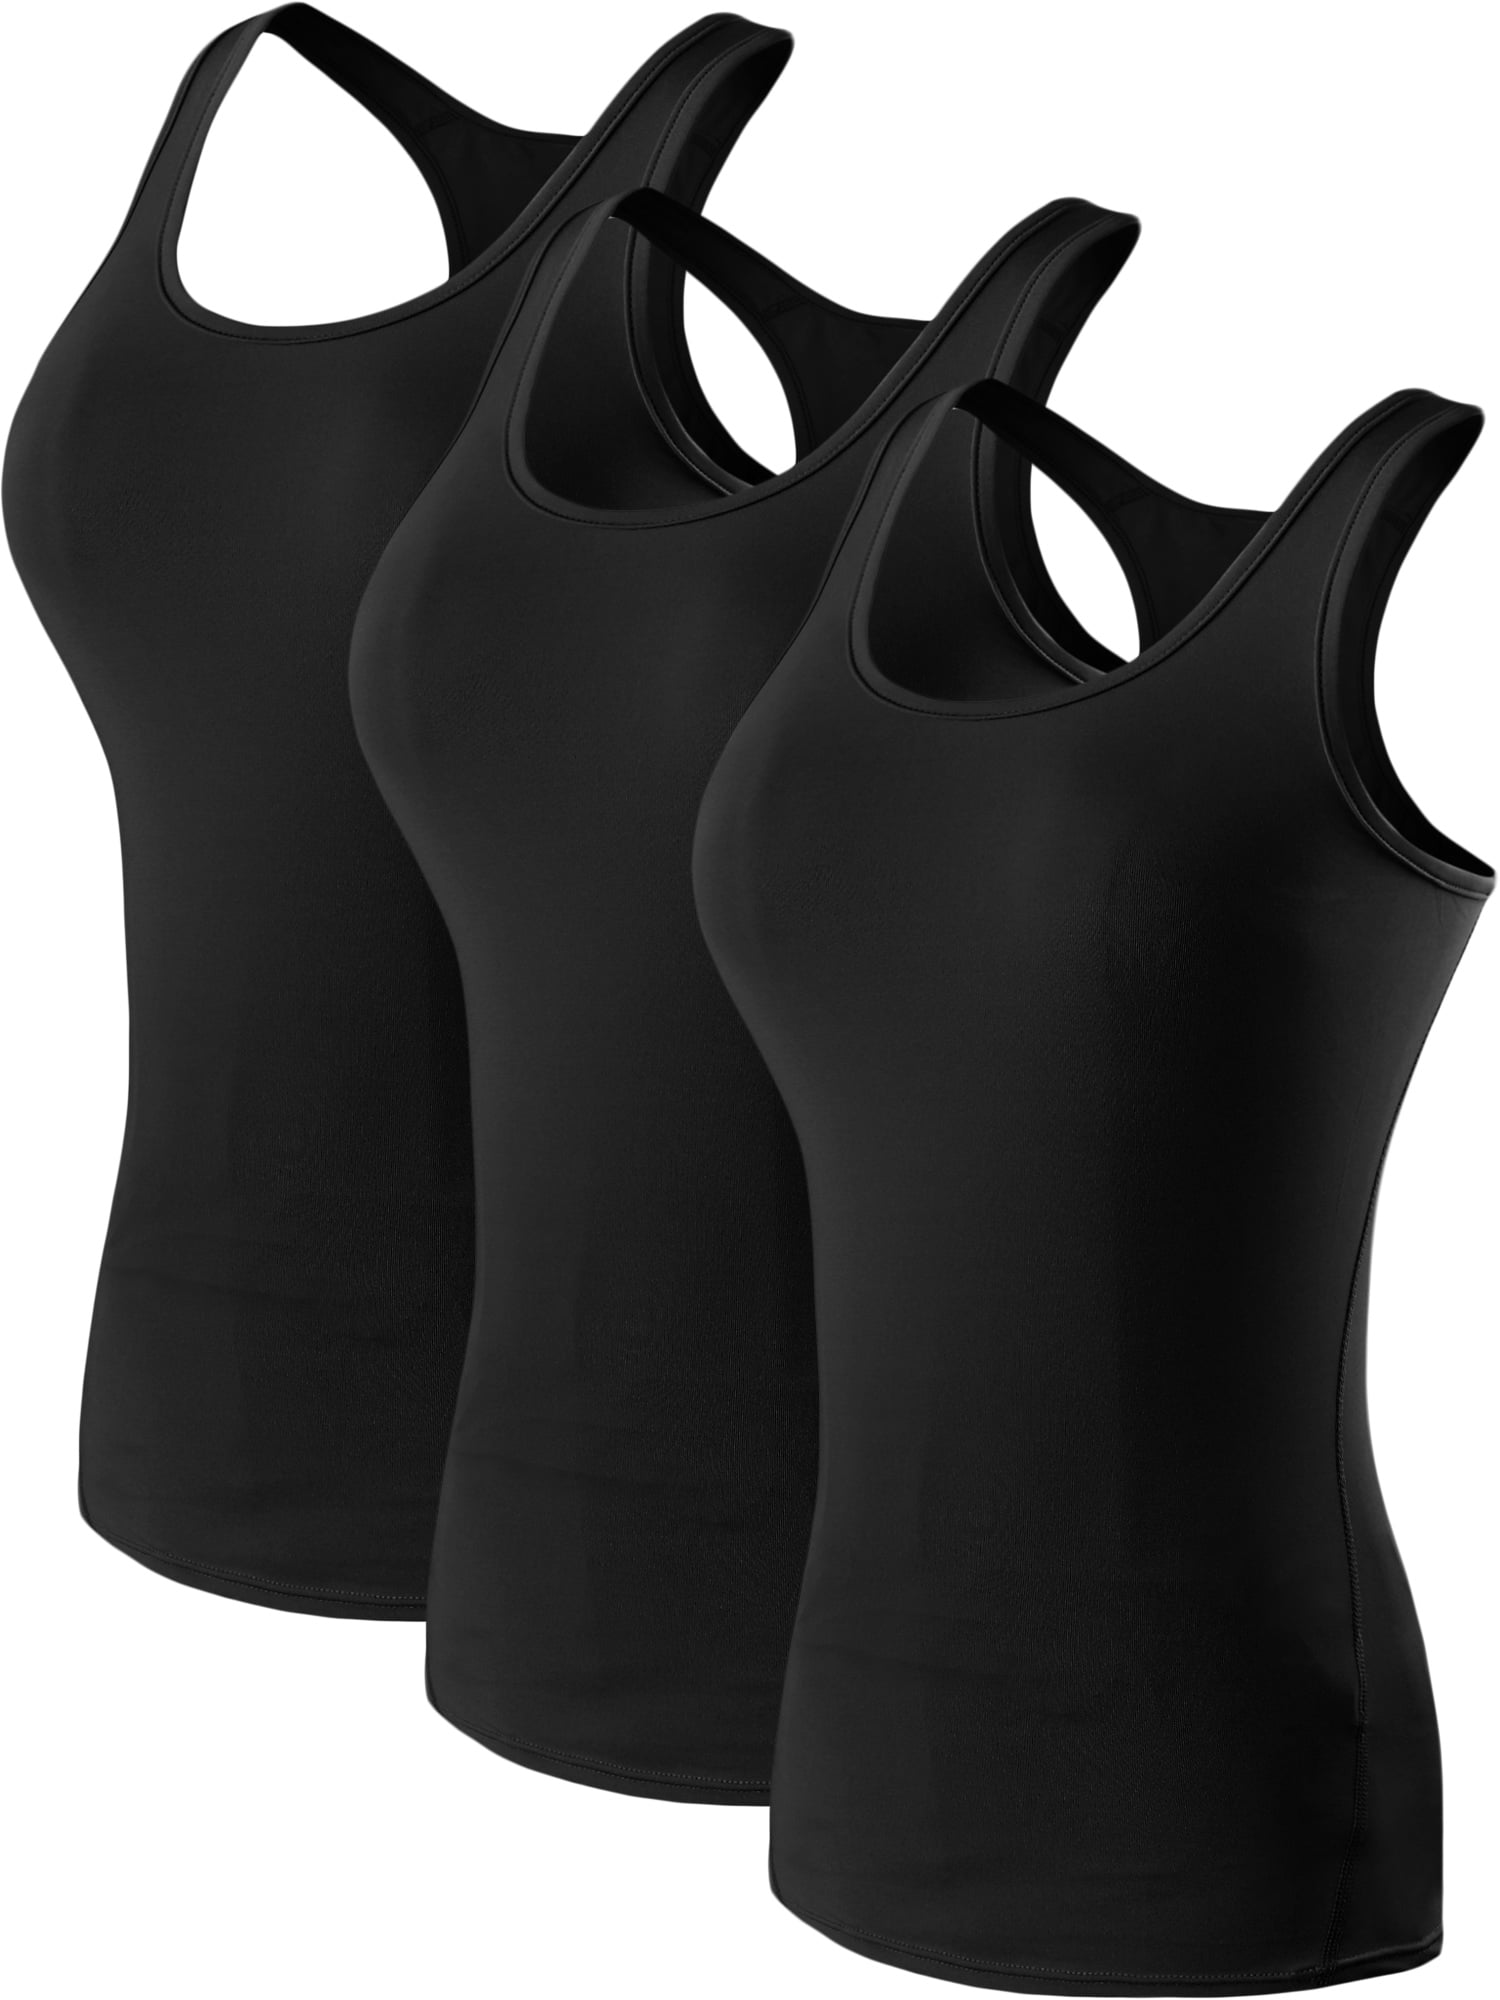 Maidenform Comfort Devotion Shapewear Tank Top Black L Women's 